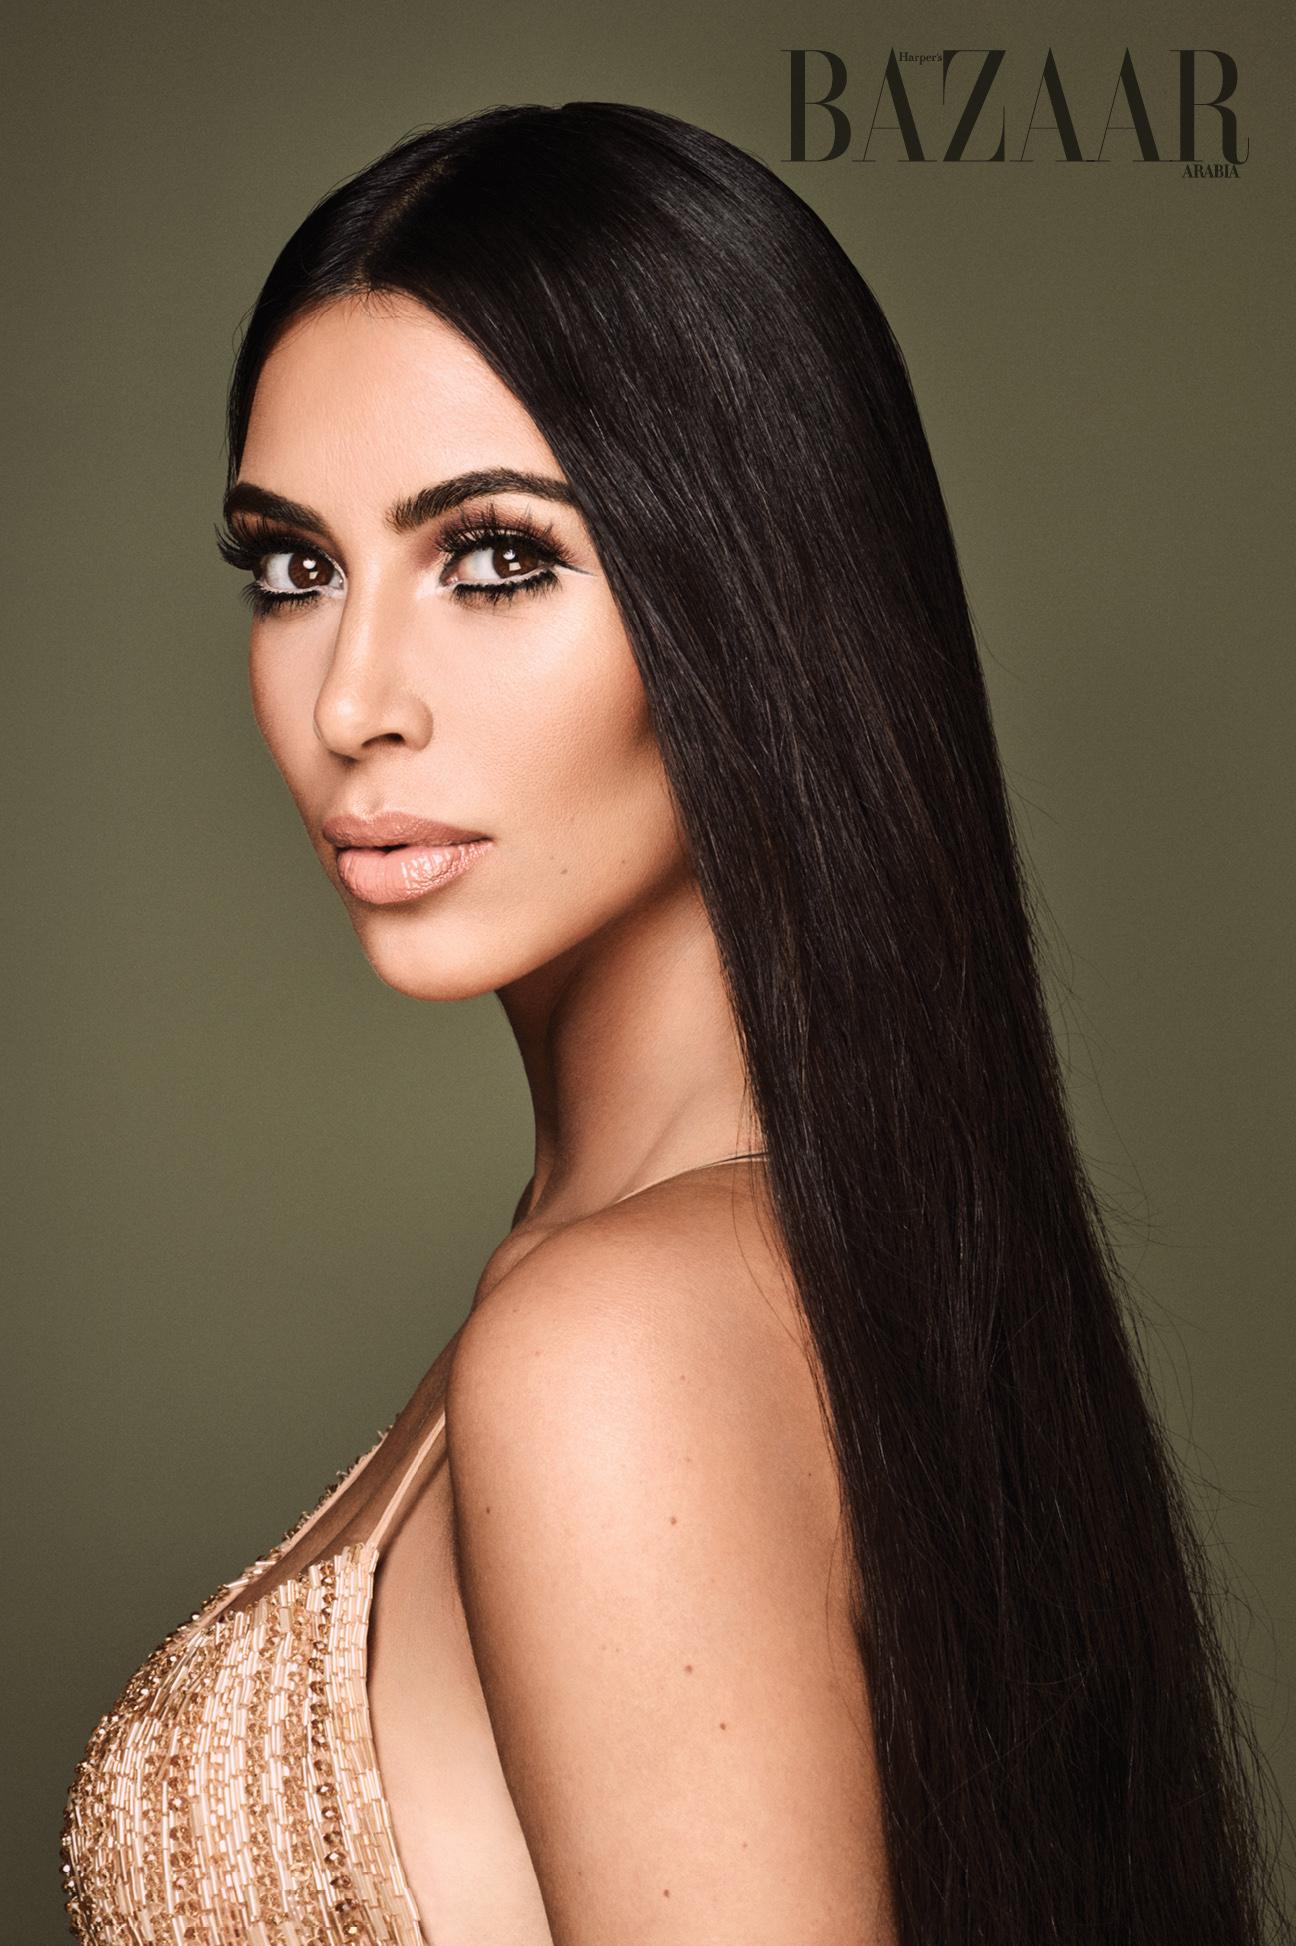 Revealed Bazaar S September Cover Star Kim Kardashian West